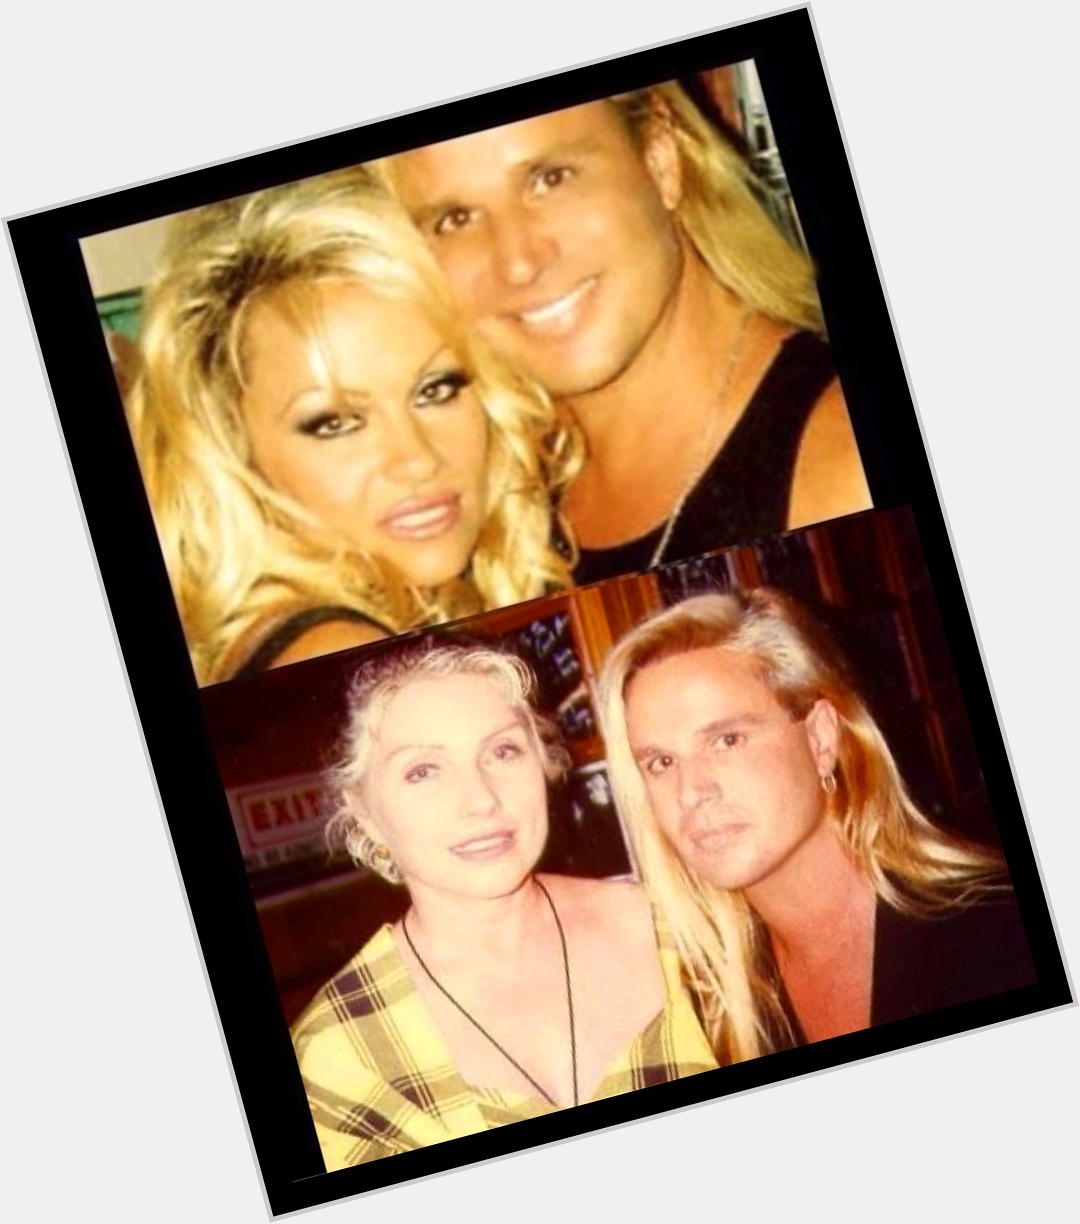 BLONDETOURAGE! Happy Birthday Pamela Anderson & Debbie Harry of Blondie! Love u both!                